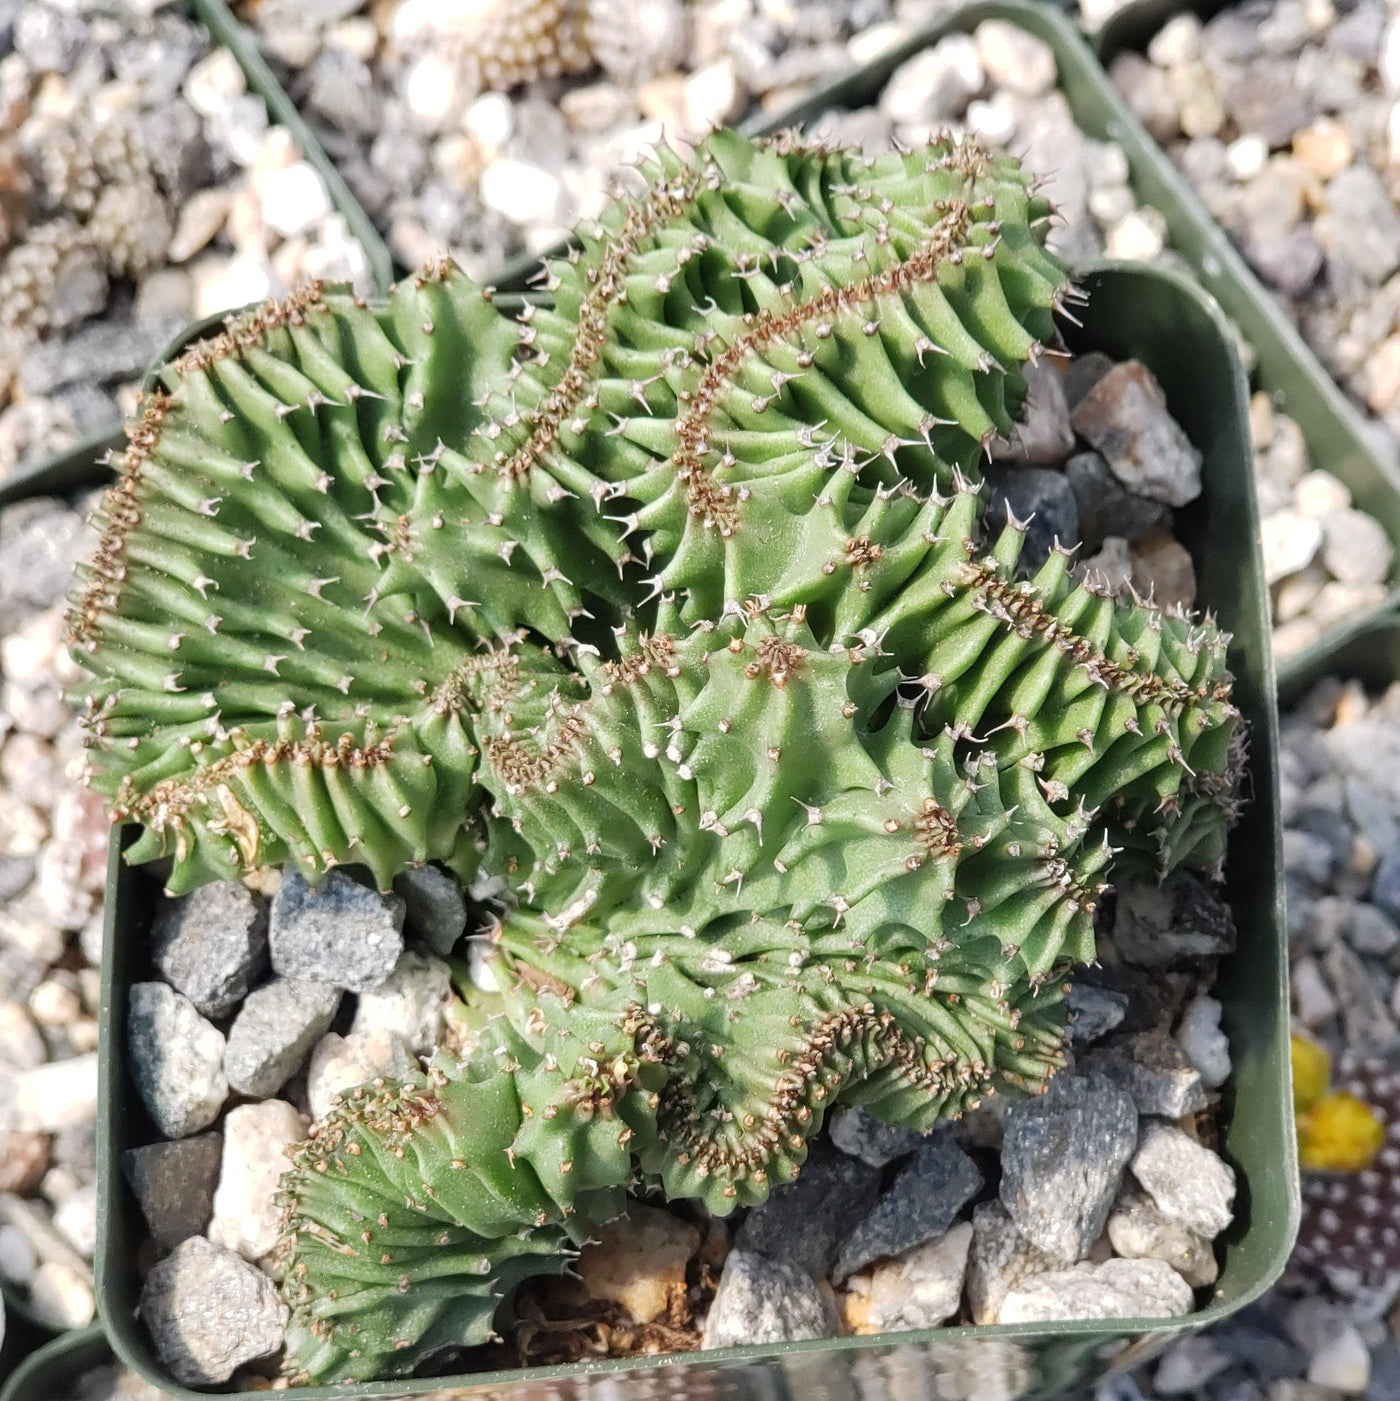 Euphorbia ammak crest